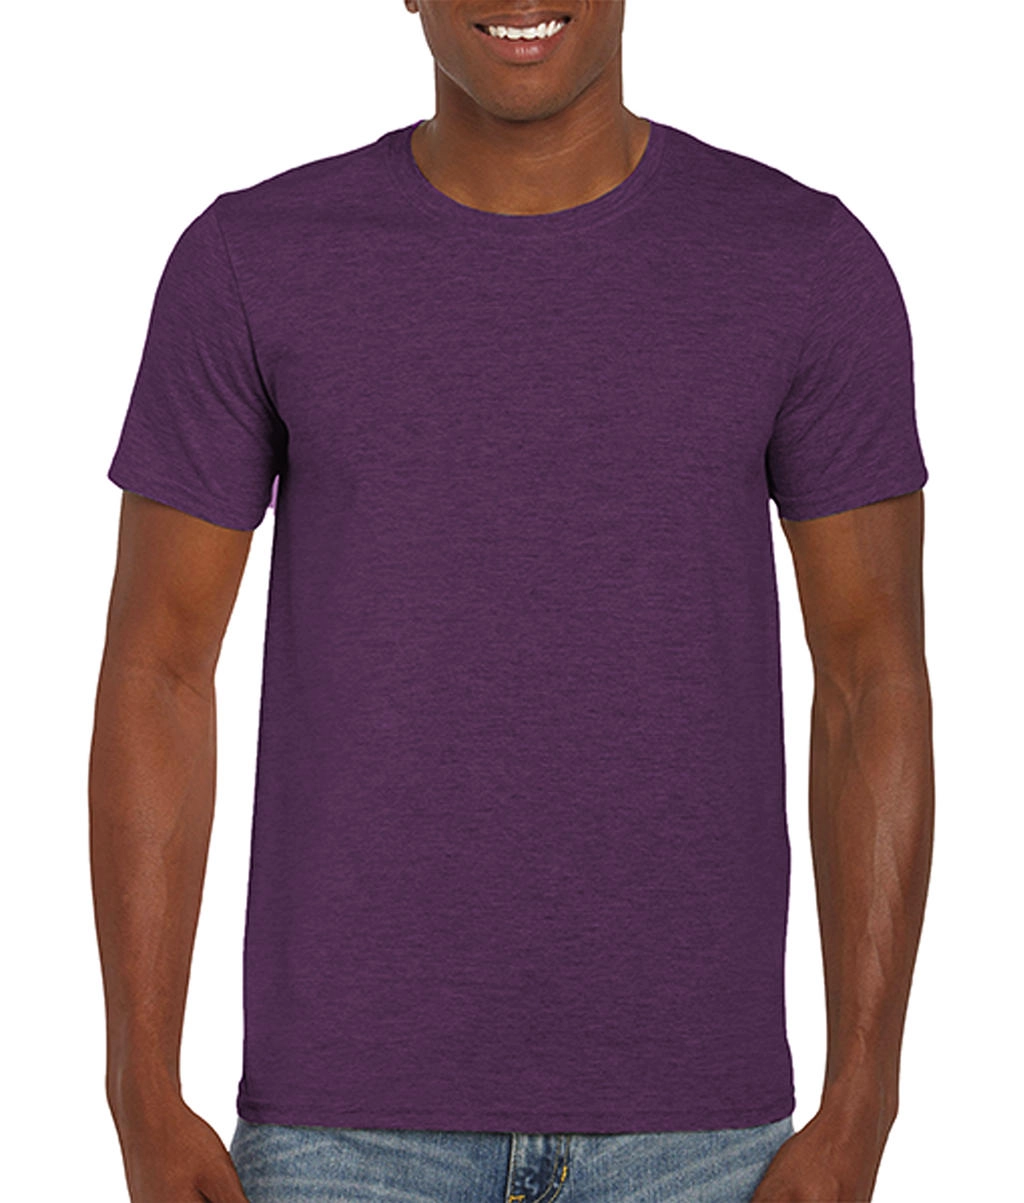 Softstyle® Ring Spun T-Shirt zum Besticken und Bedrucken in der Farbe Heather Aubergine mit Ihren Logo, Schriftzug oder Motiv.